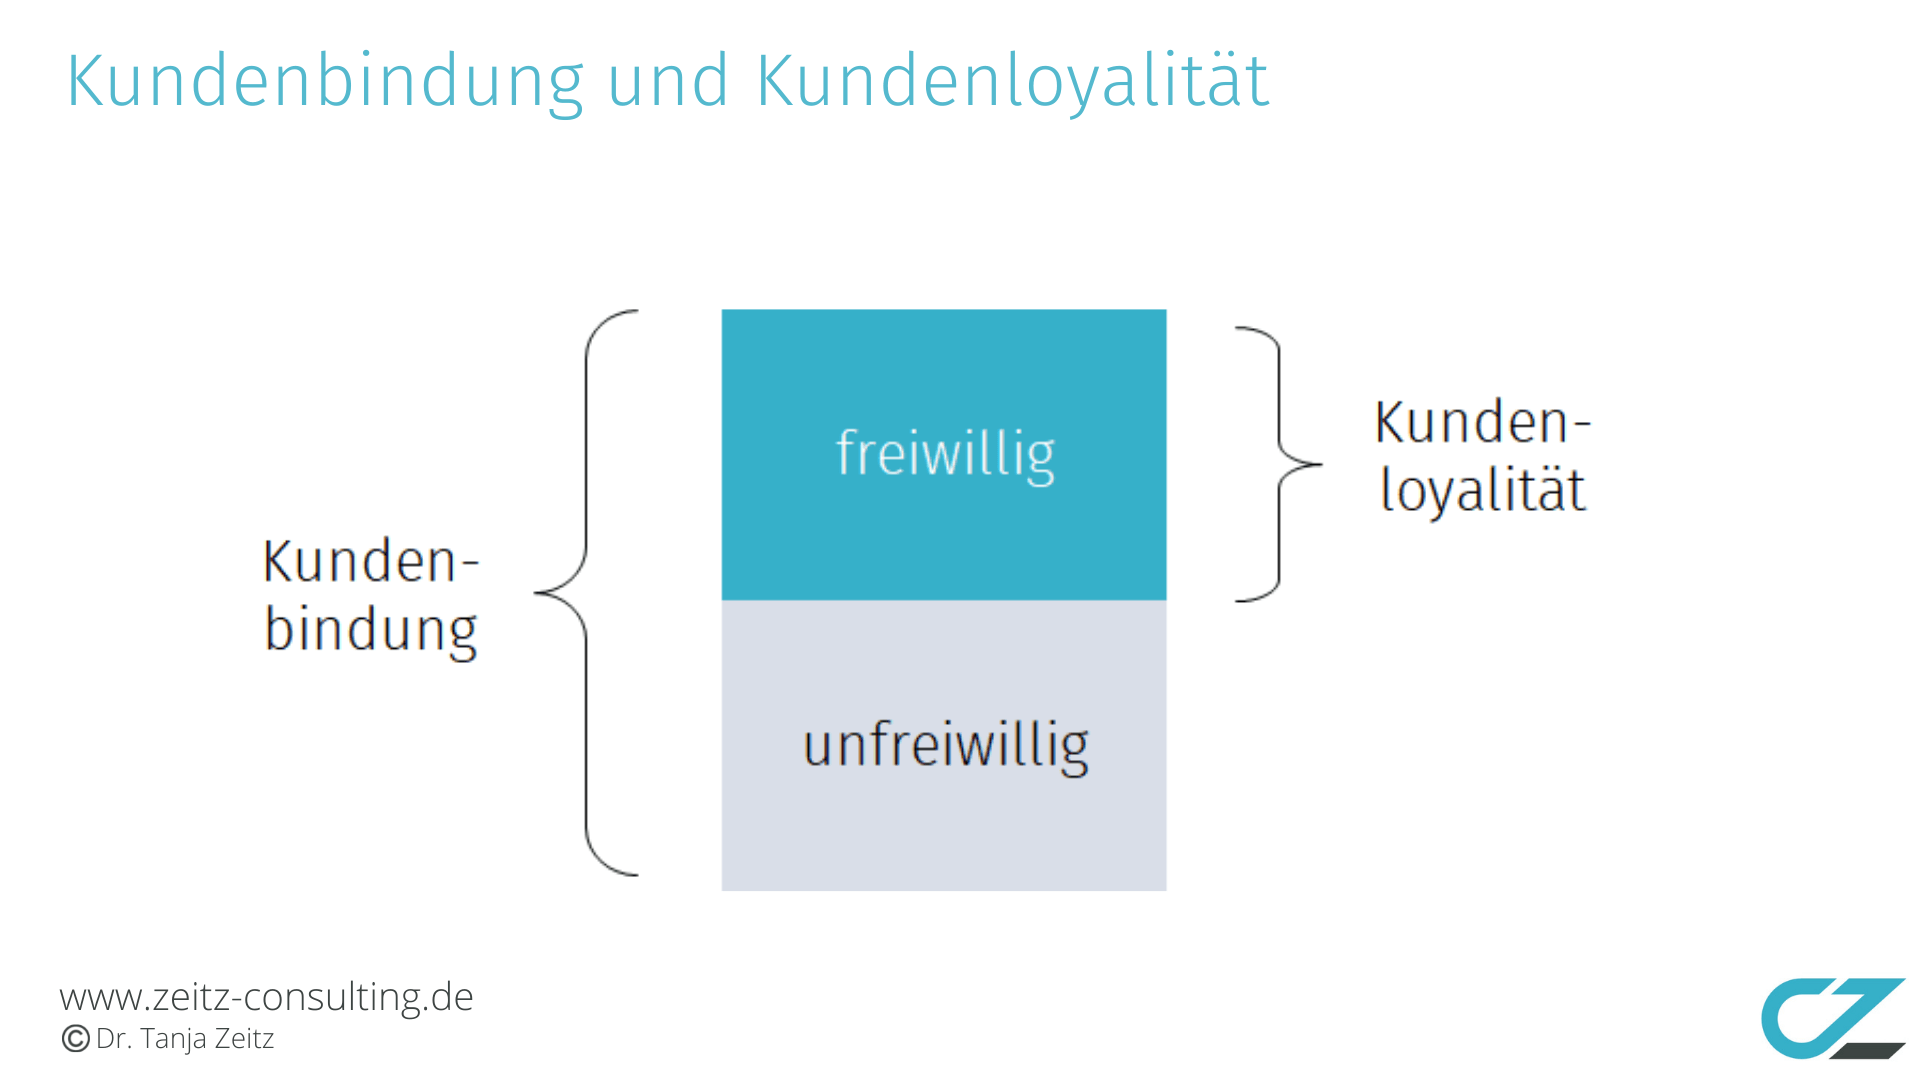 Der Unterschied zwischen Kundenbindung und Kundenloyalität